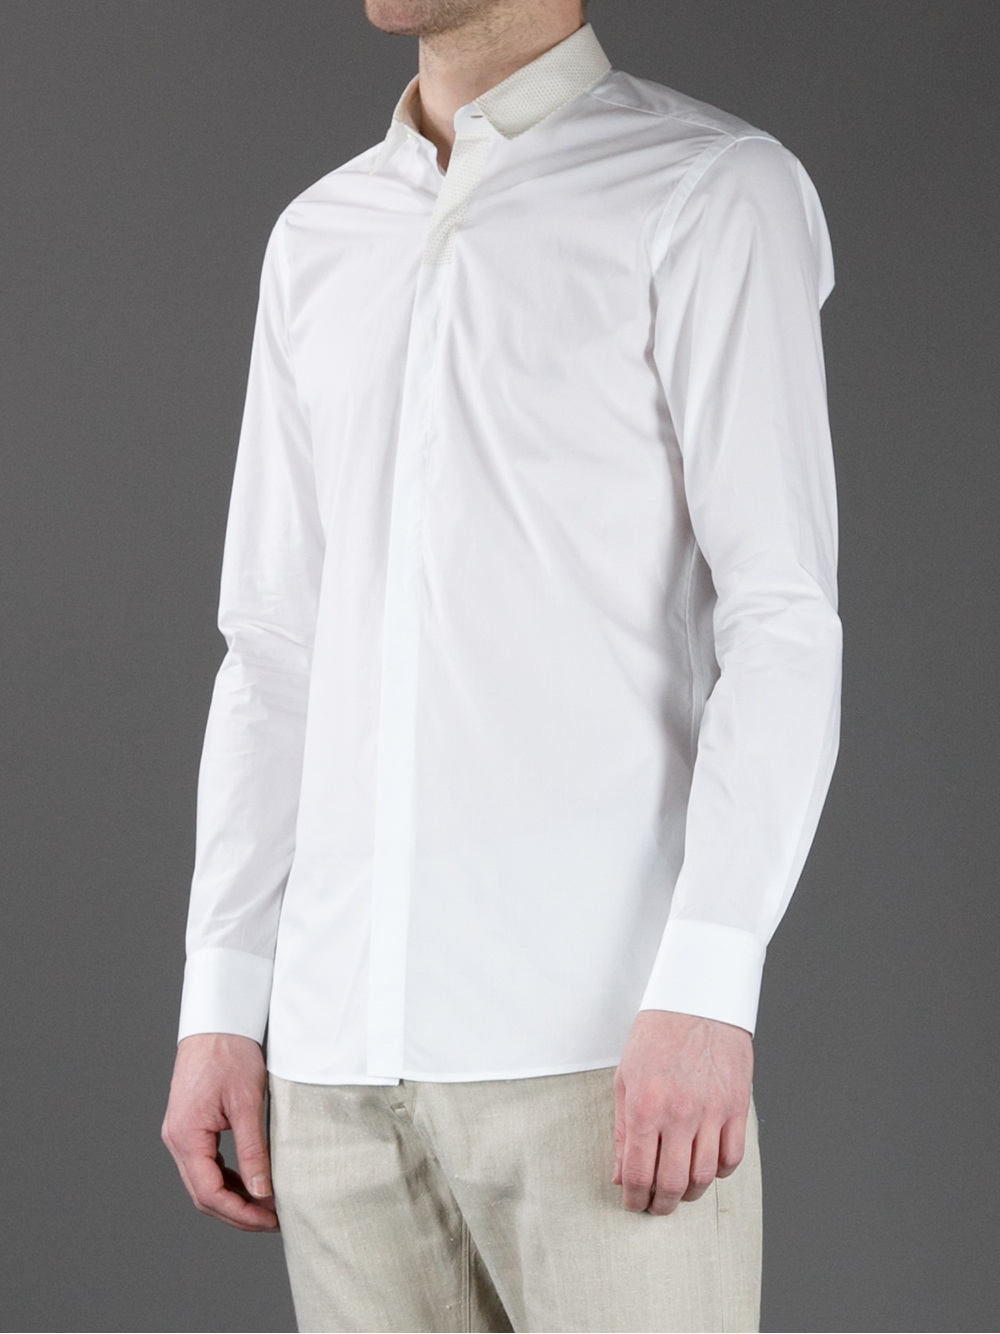 Fendi Long Sleeve Dress Shirt in White for Men - Lyst